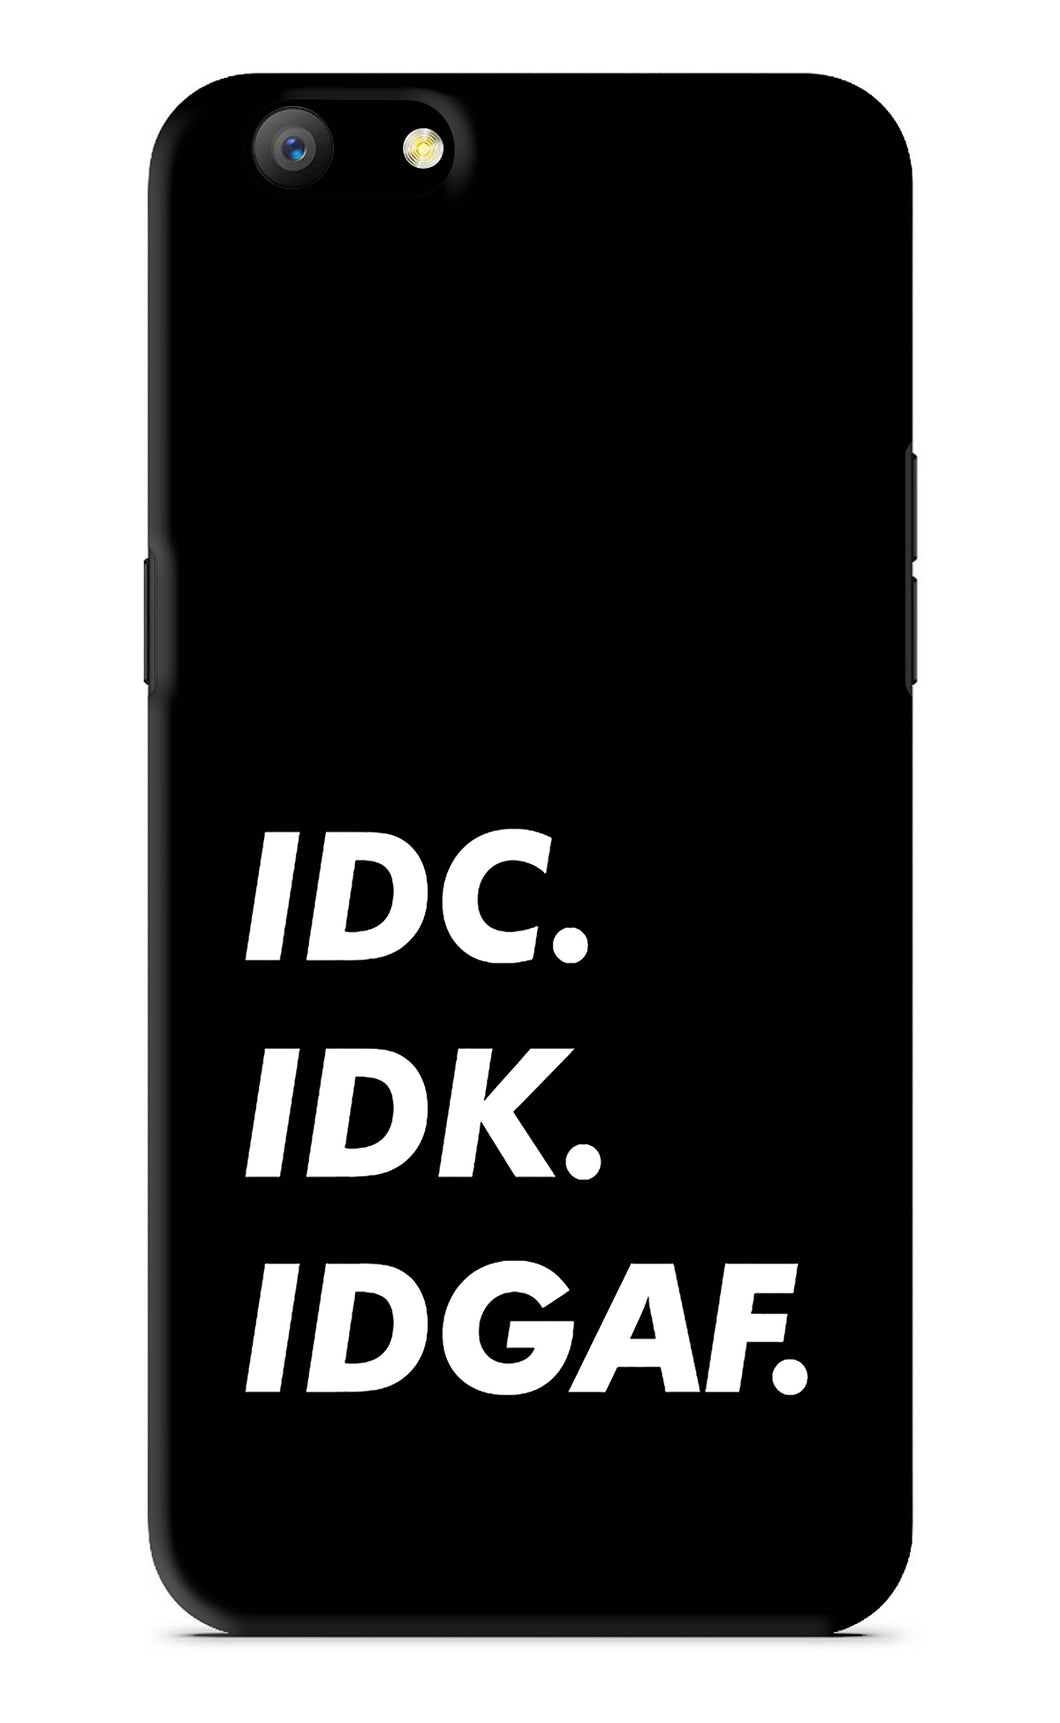 Idc Idk Idgaf Oppo A57 Back Skin Wrap